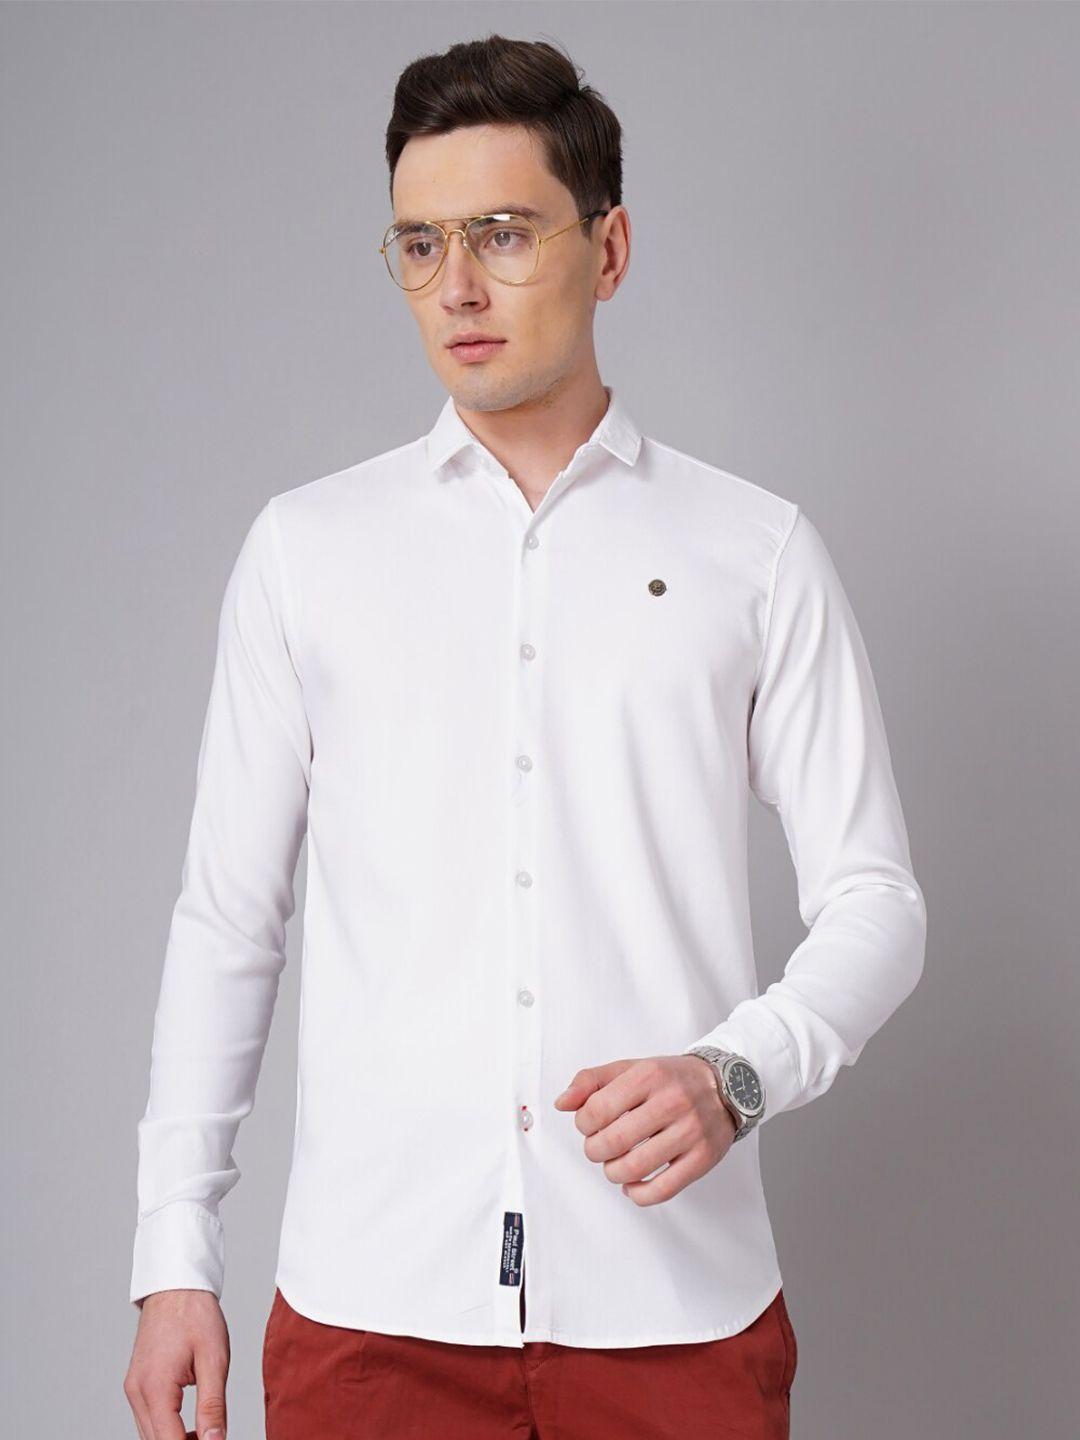 paul street standard slim fit long sleeves casual shirt